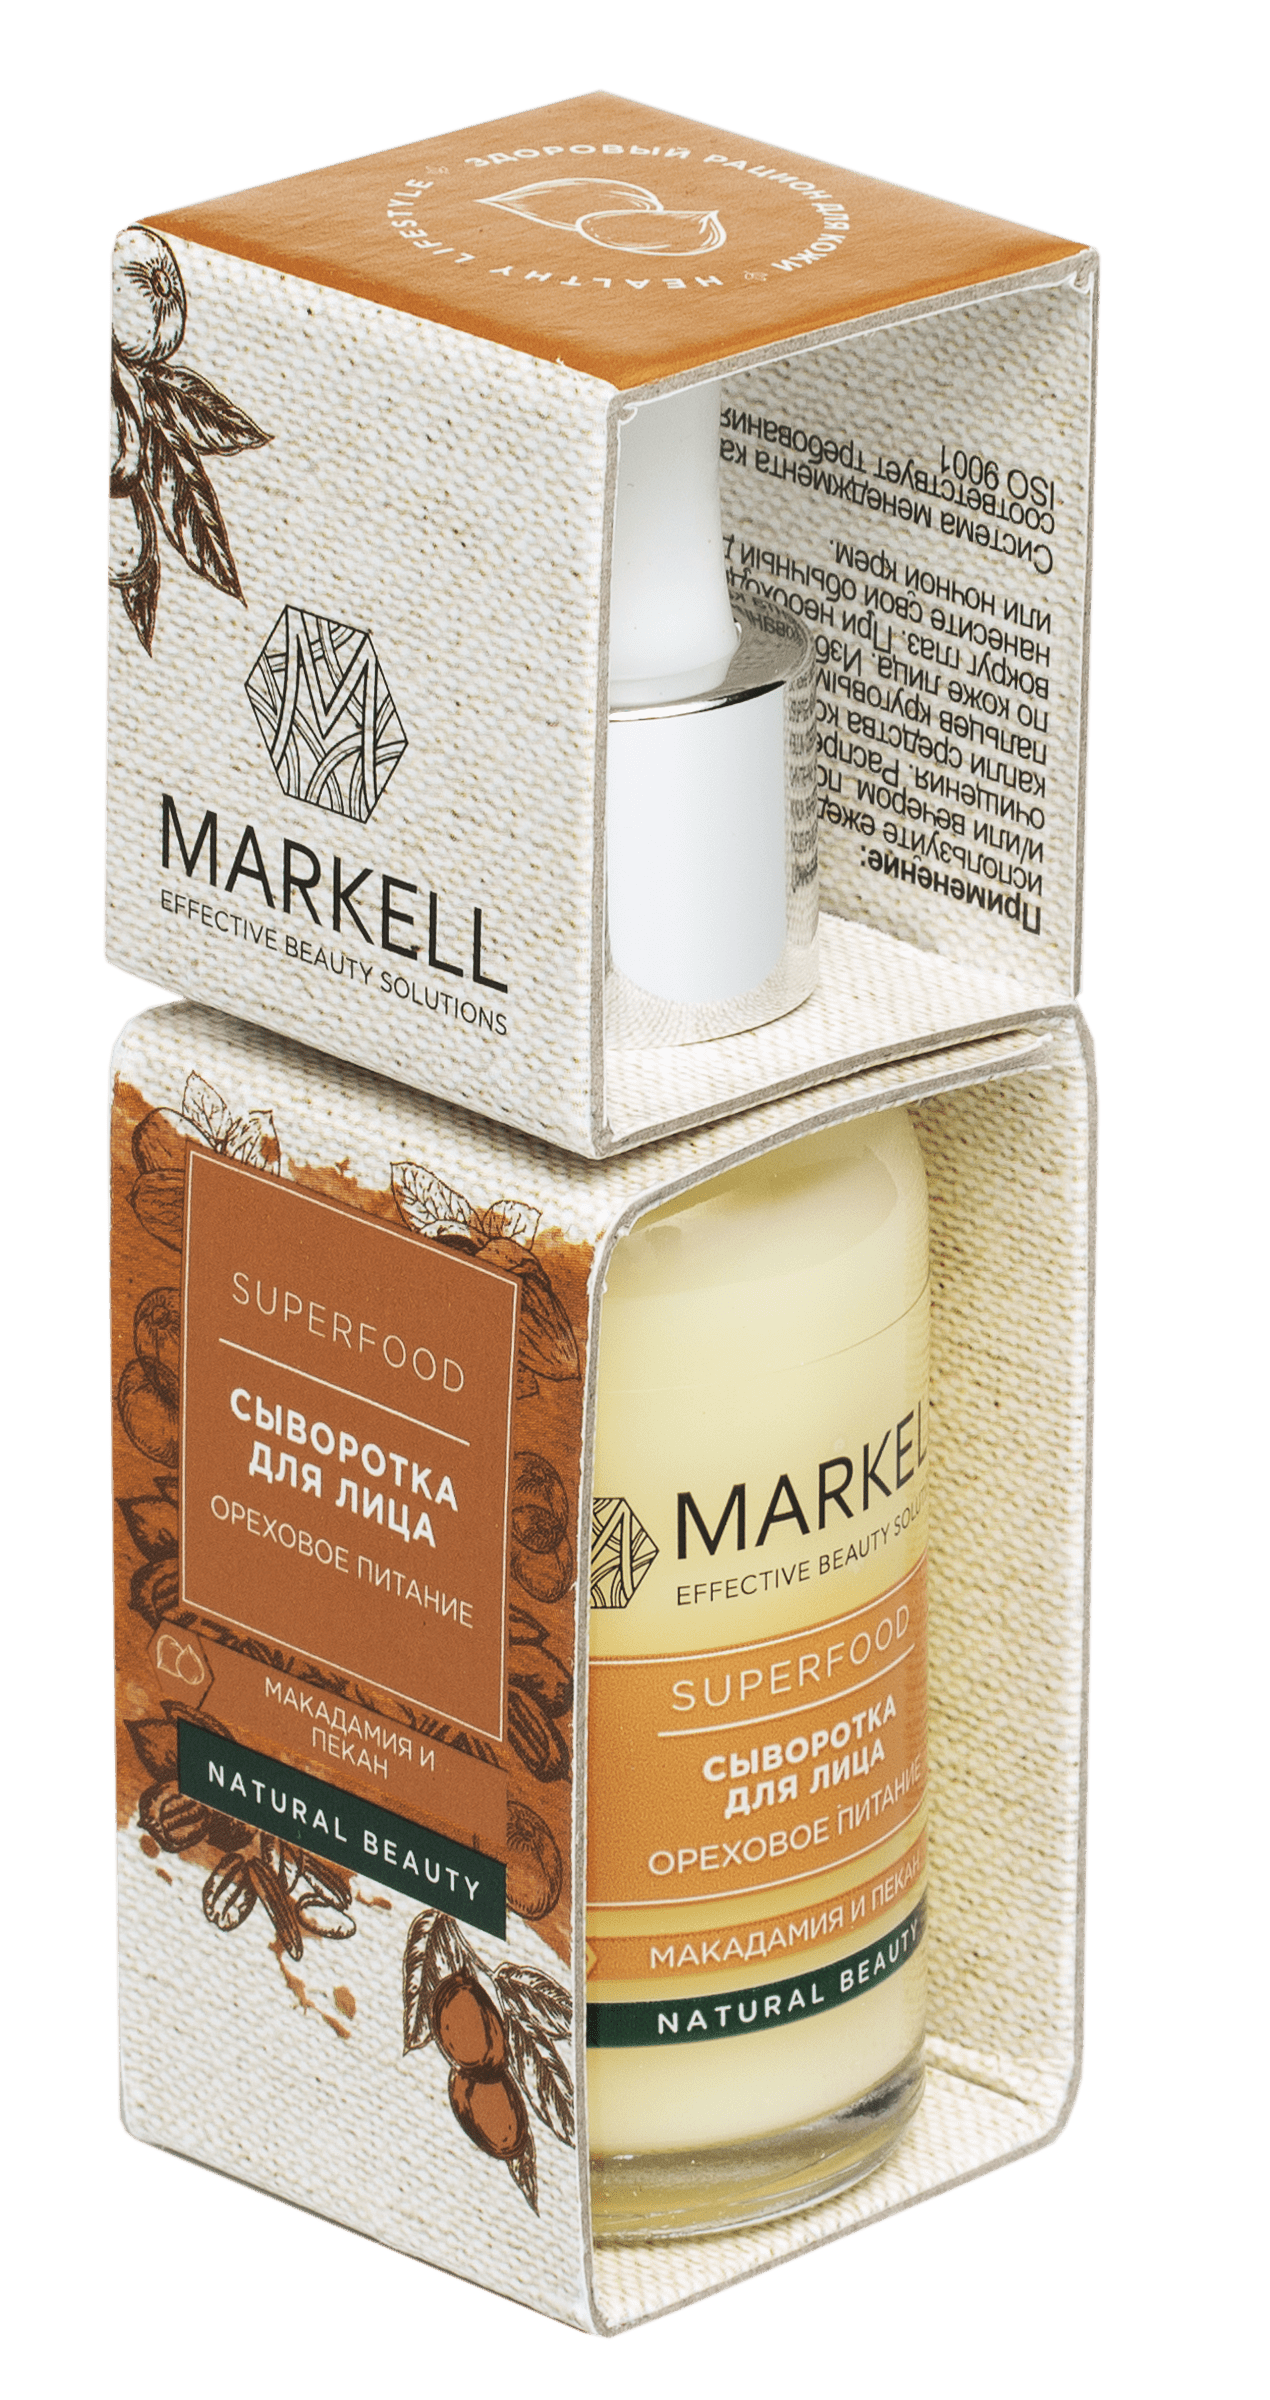 Сыворотка для лица Markell Superfood ореховое питание, 30 мл